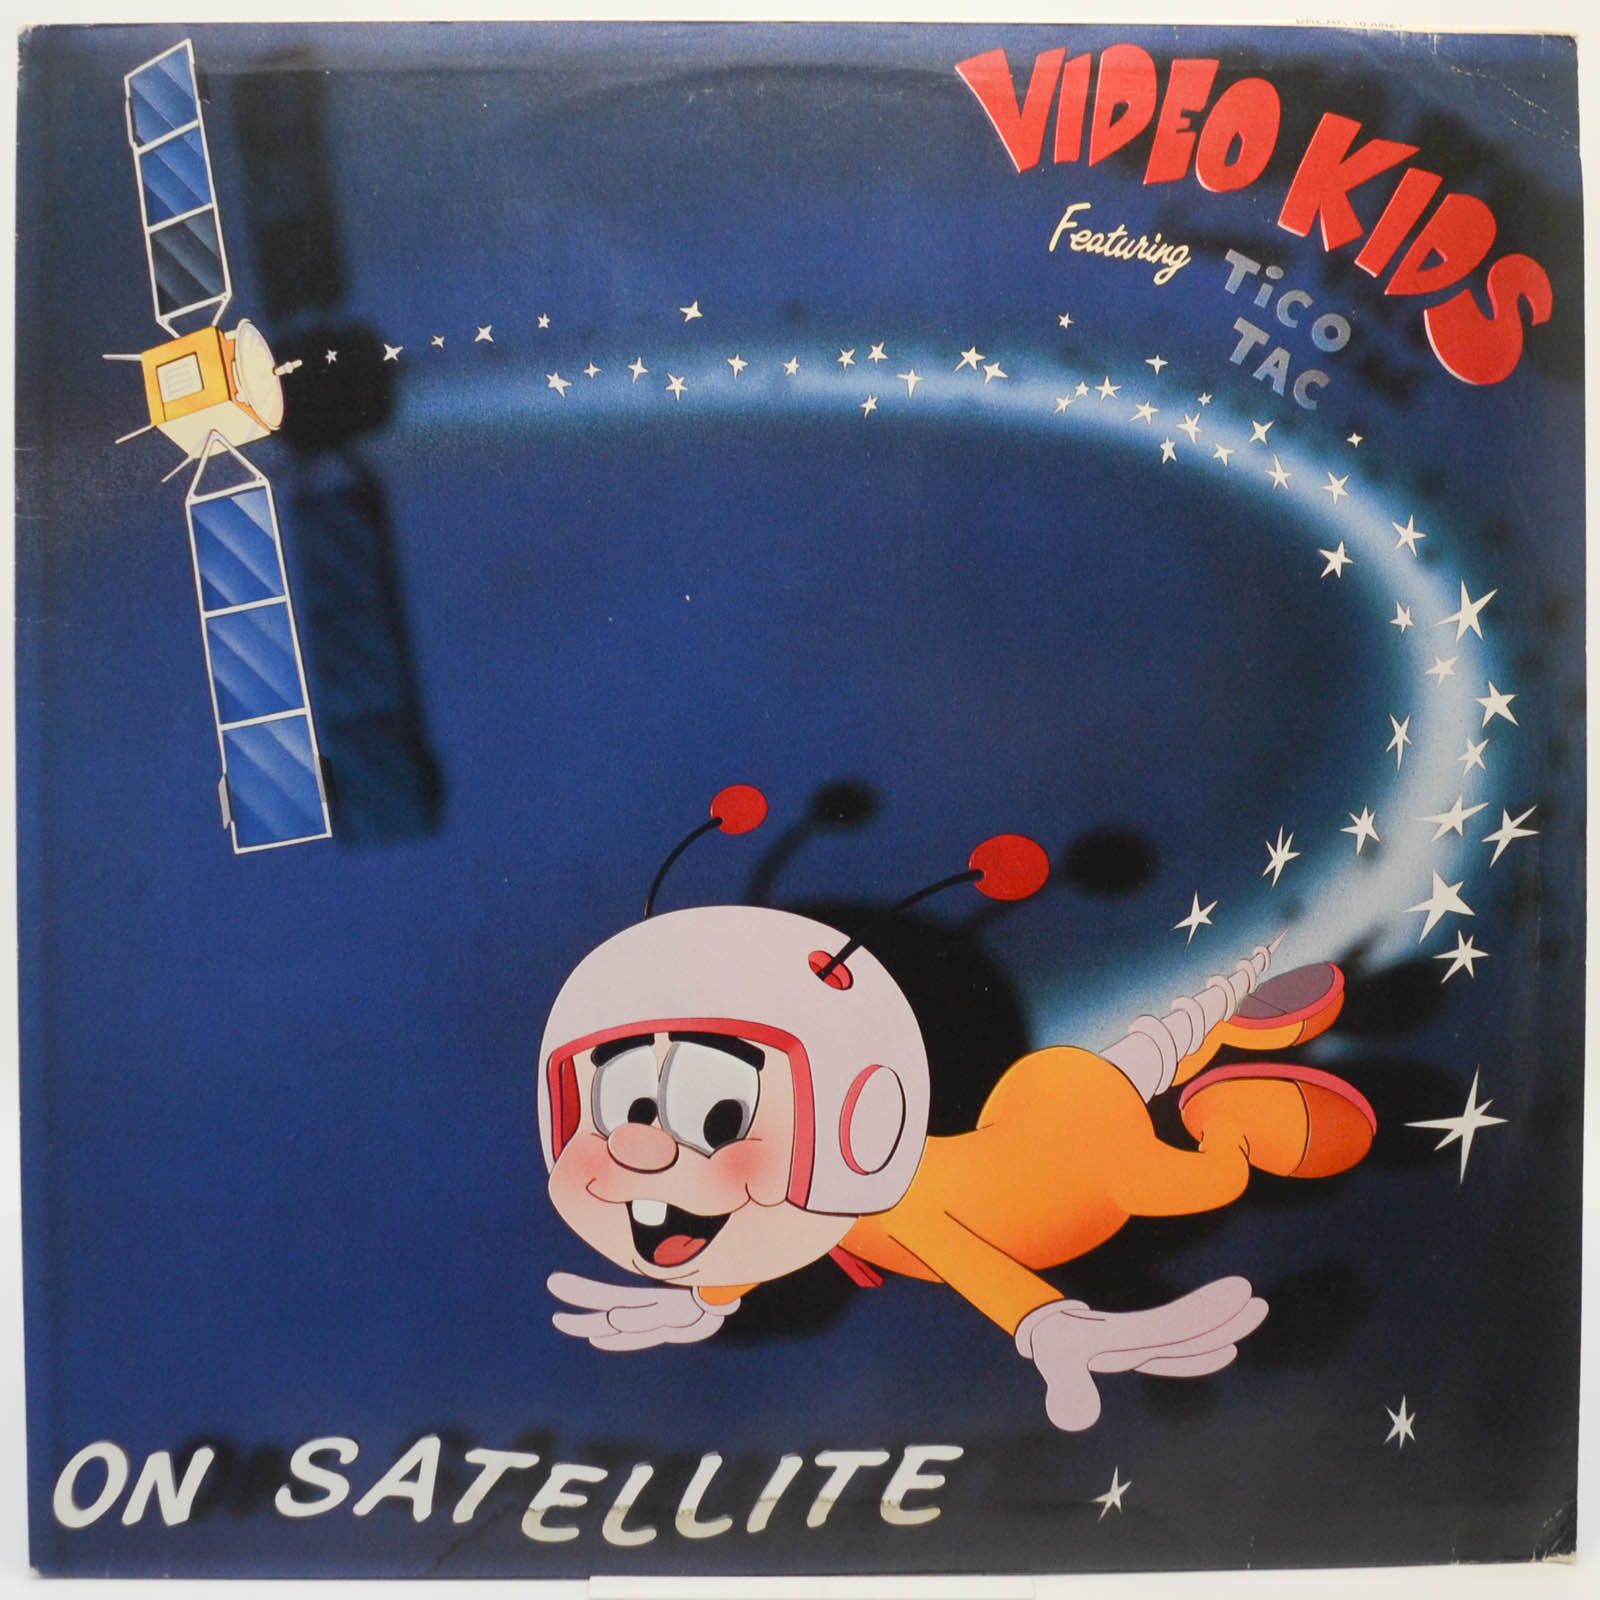 Video Kids — On Satellite, 1985